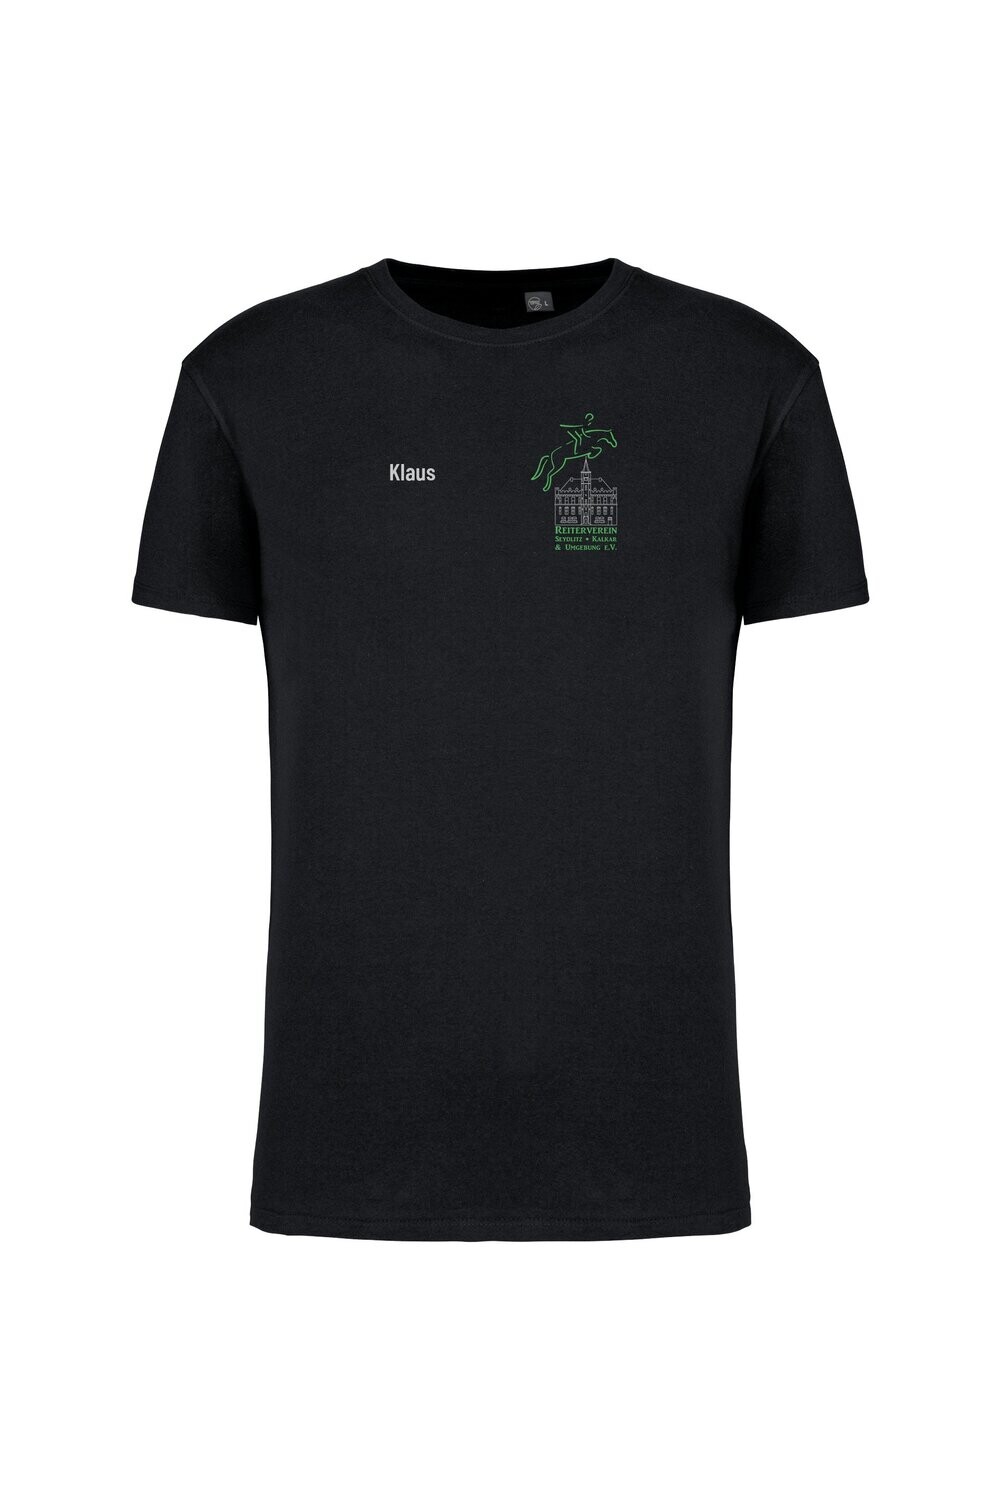 Freizeit T-Shirt Unisex schwarz